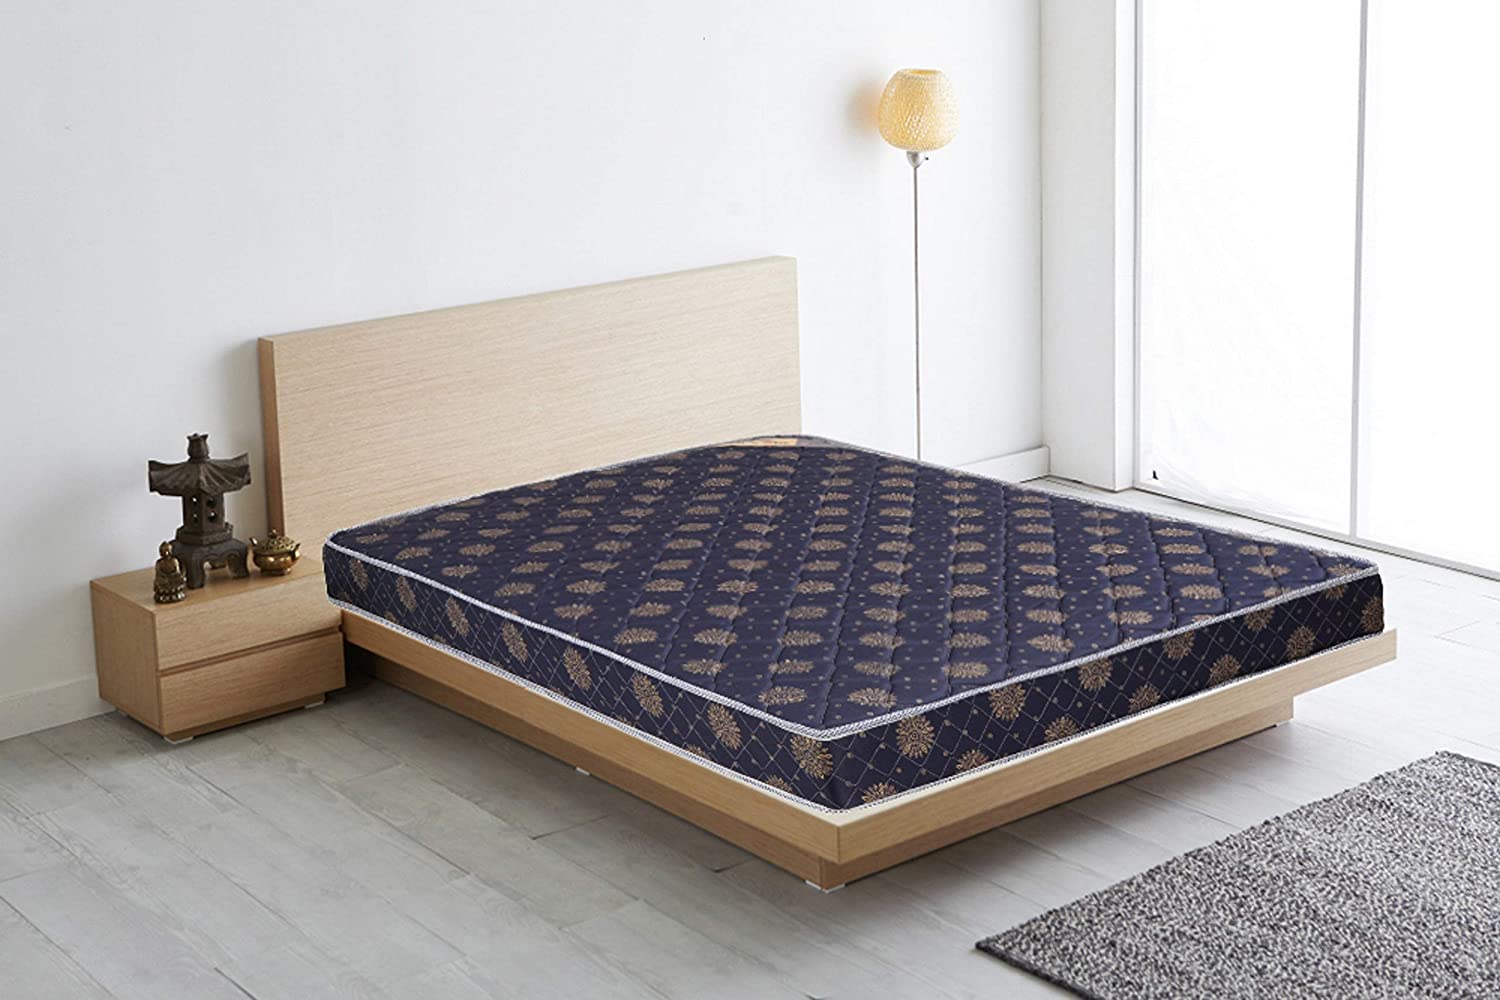 euro dreams mattress review